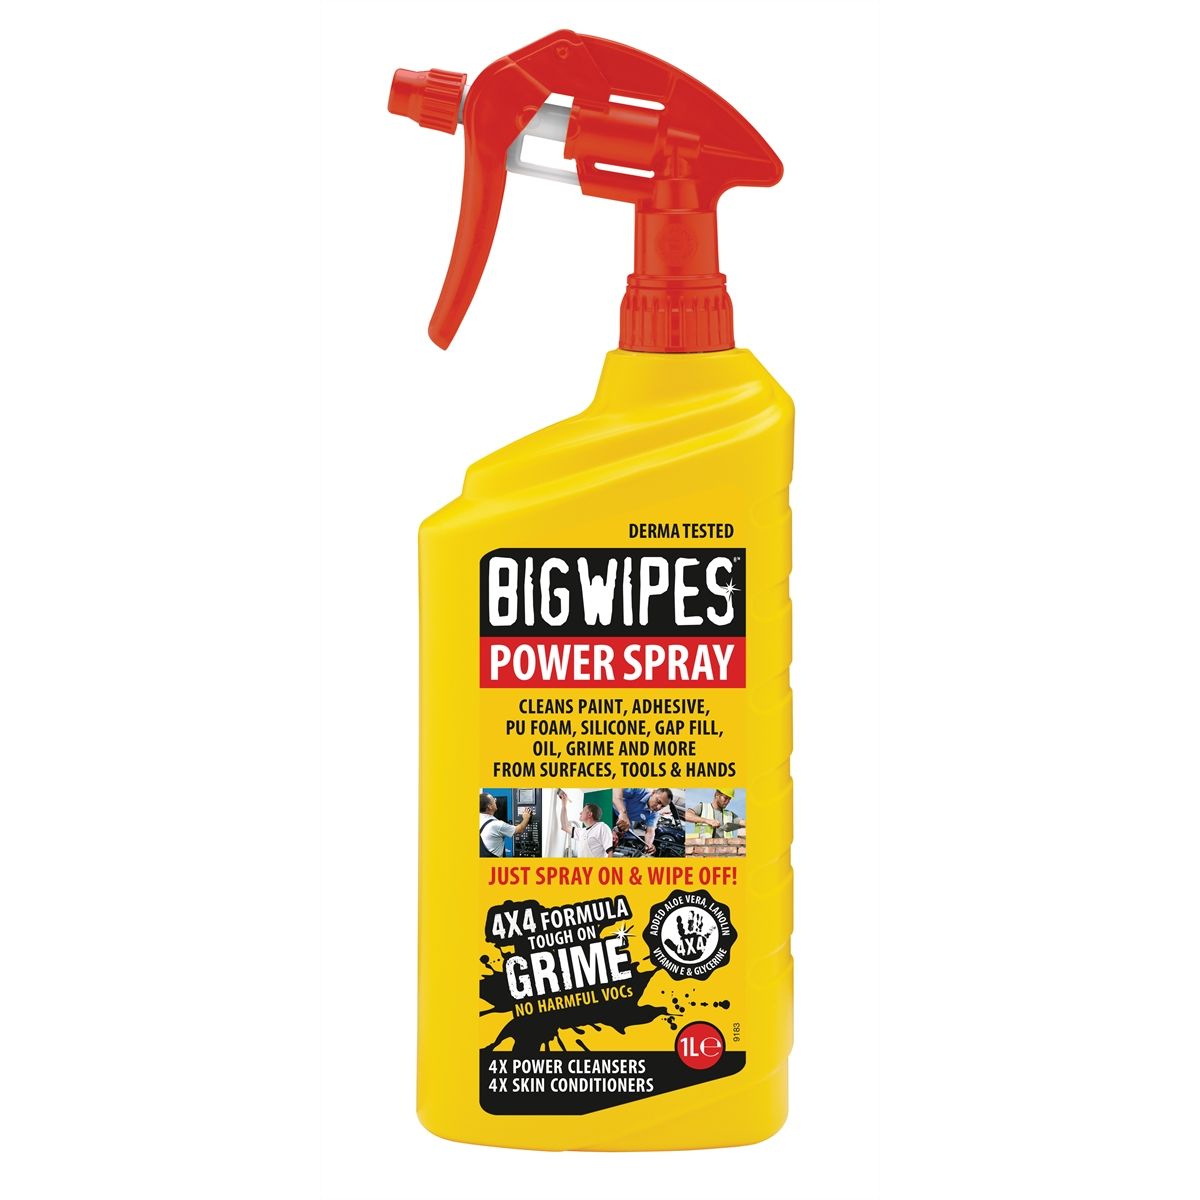 Big Wipes Power Spray 32 oz.